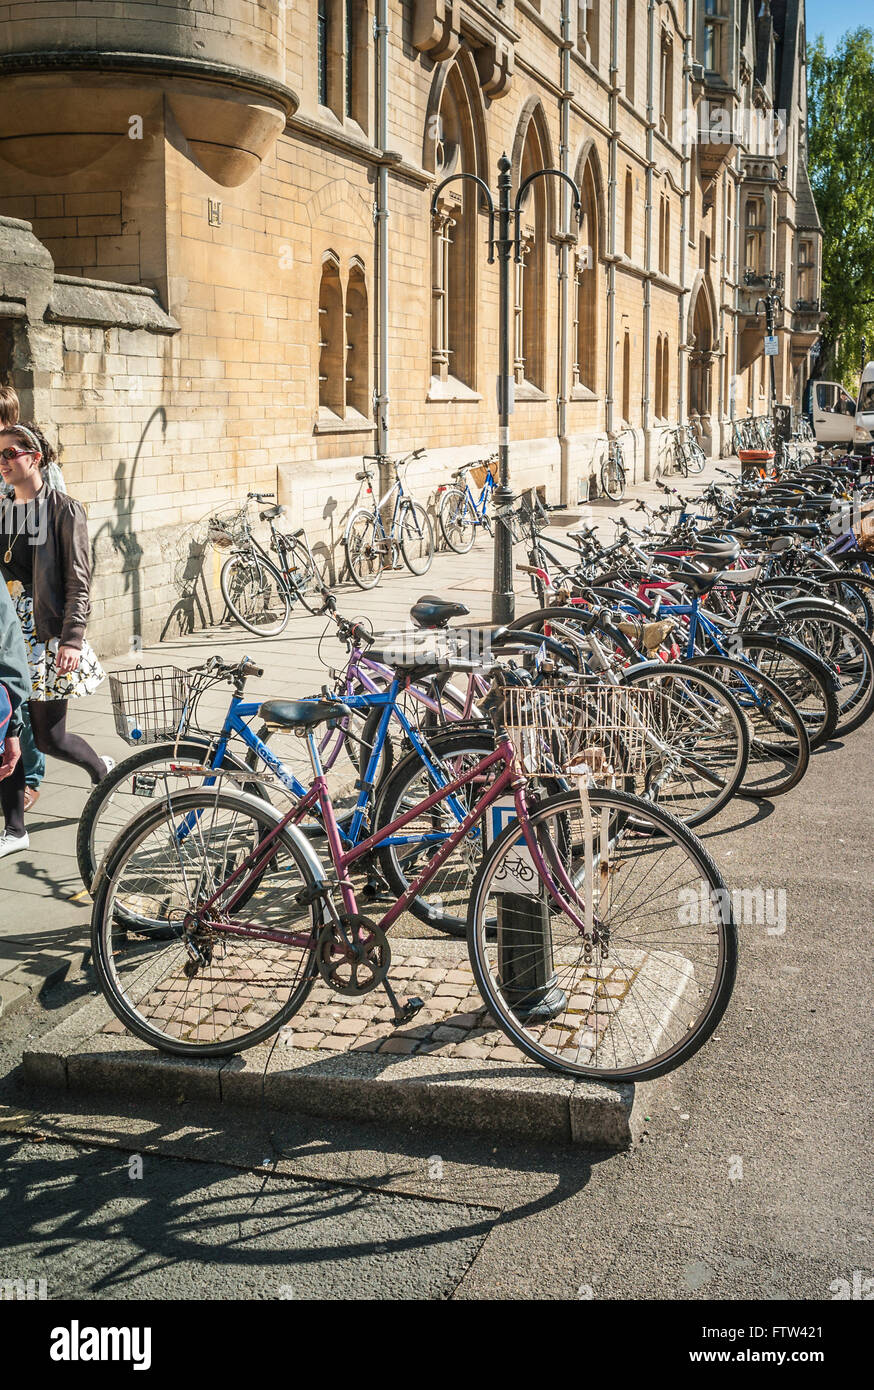 Des vélos garés devant des étudiants des collèges de l'université d'Oxford UK Banque D'Images